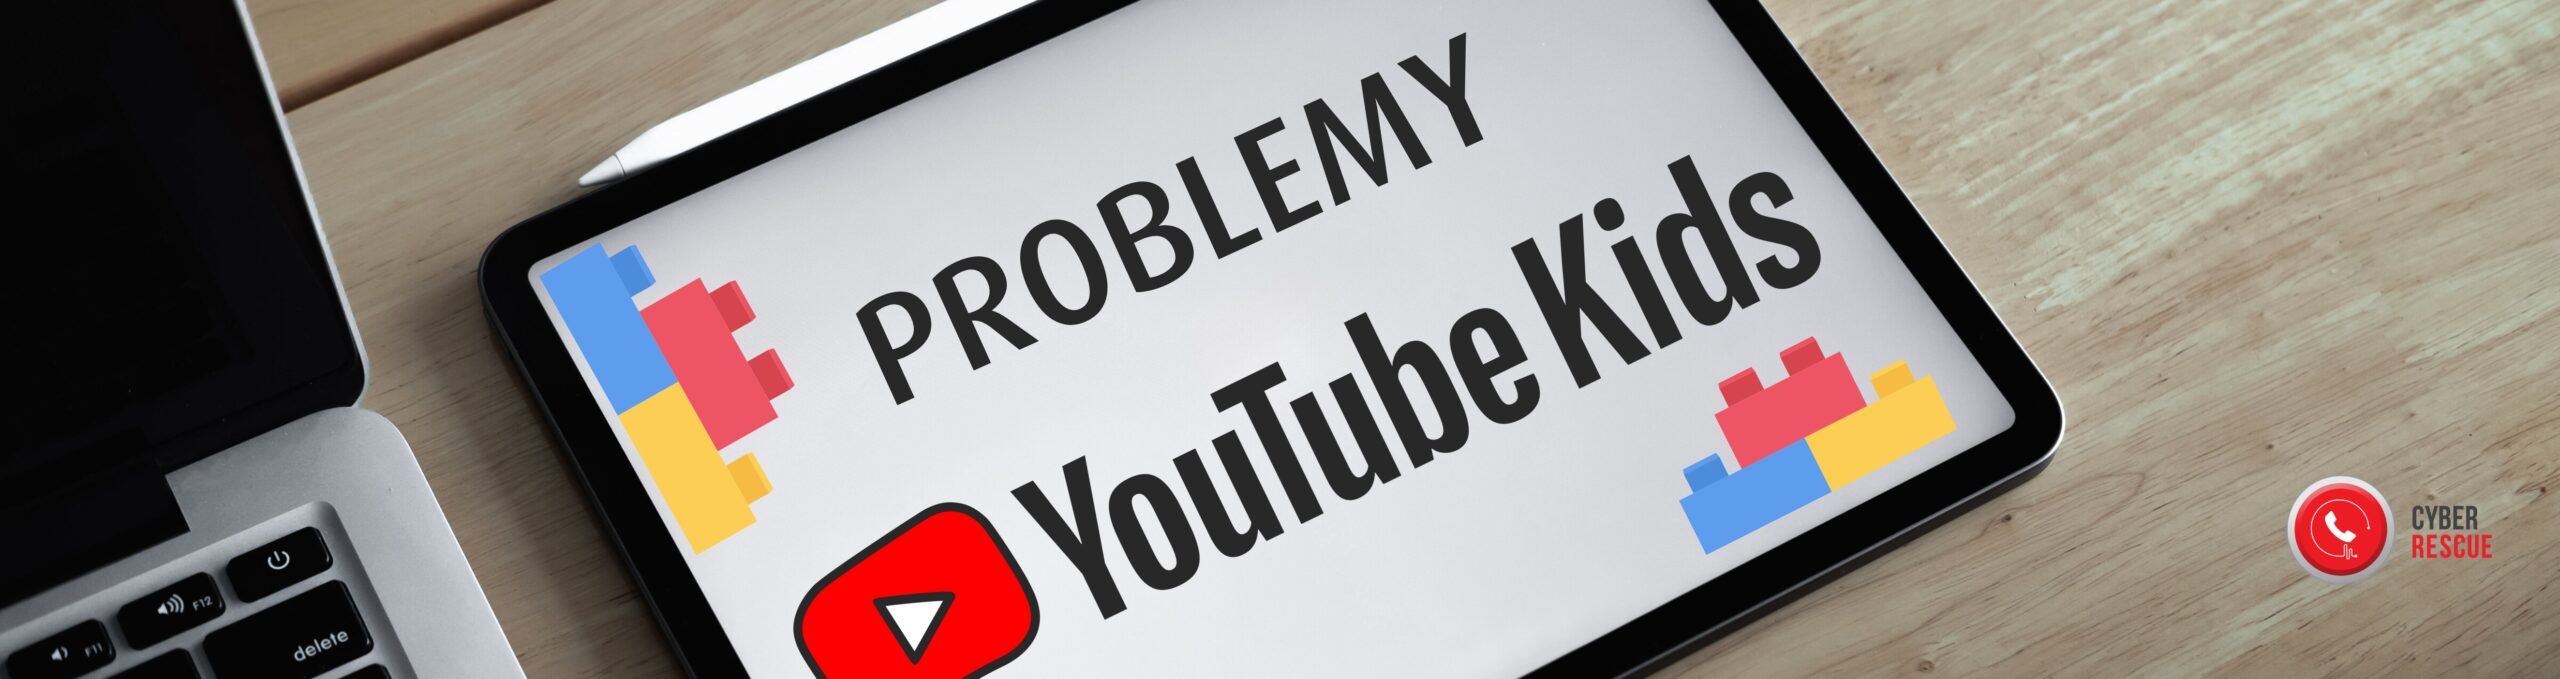 YouTube Kids — czy wiesz, co oglądają Twoje dzieci?